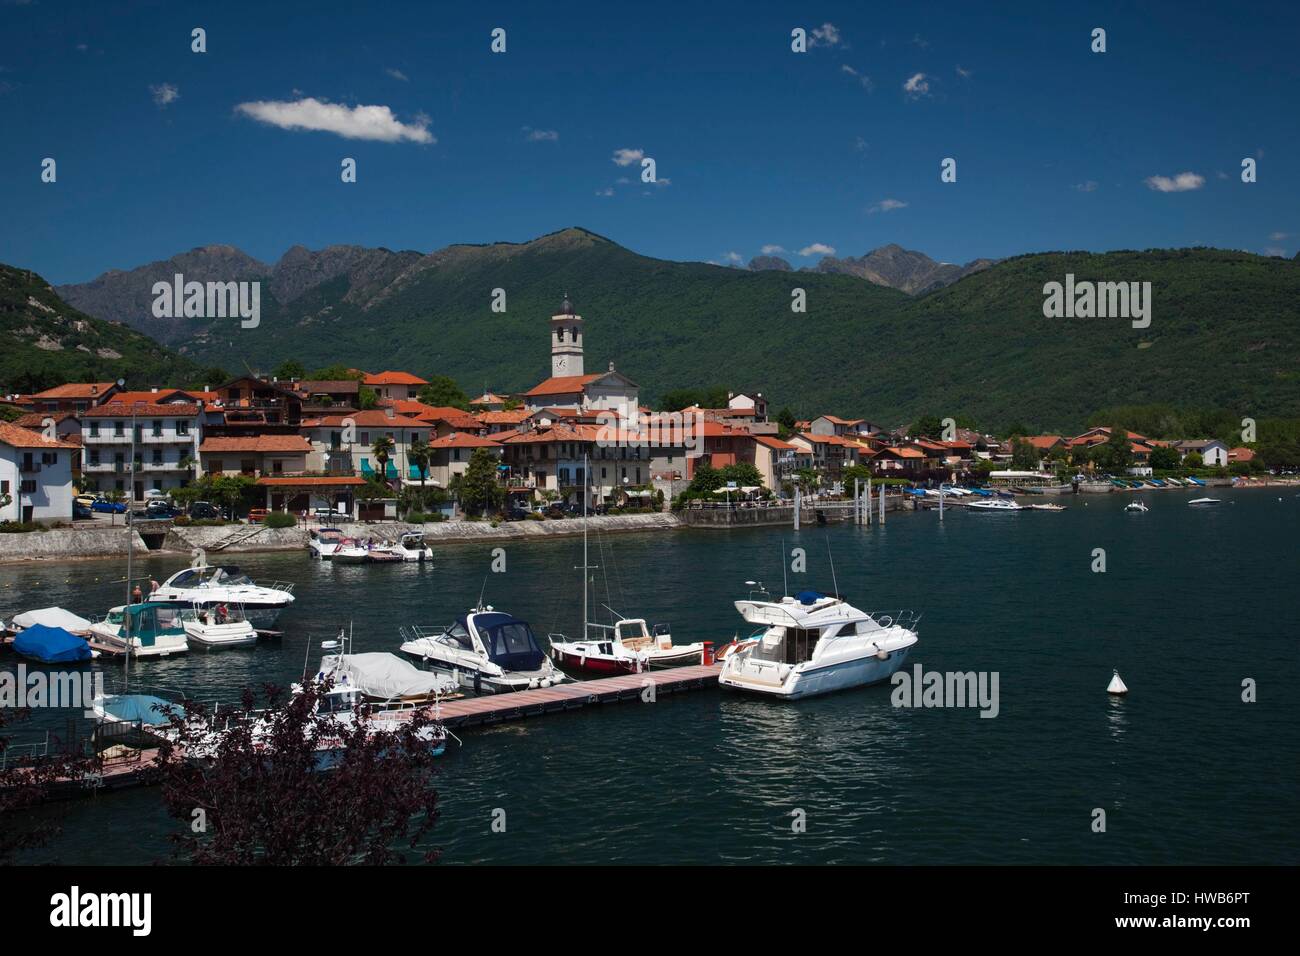 L'Italie, le Piémont, le Lac Majeur, Feriolo, Lakefront Resort town Banque D'Images